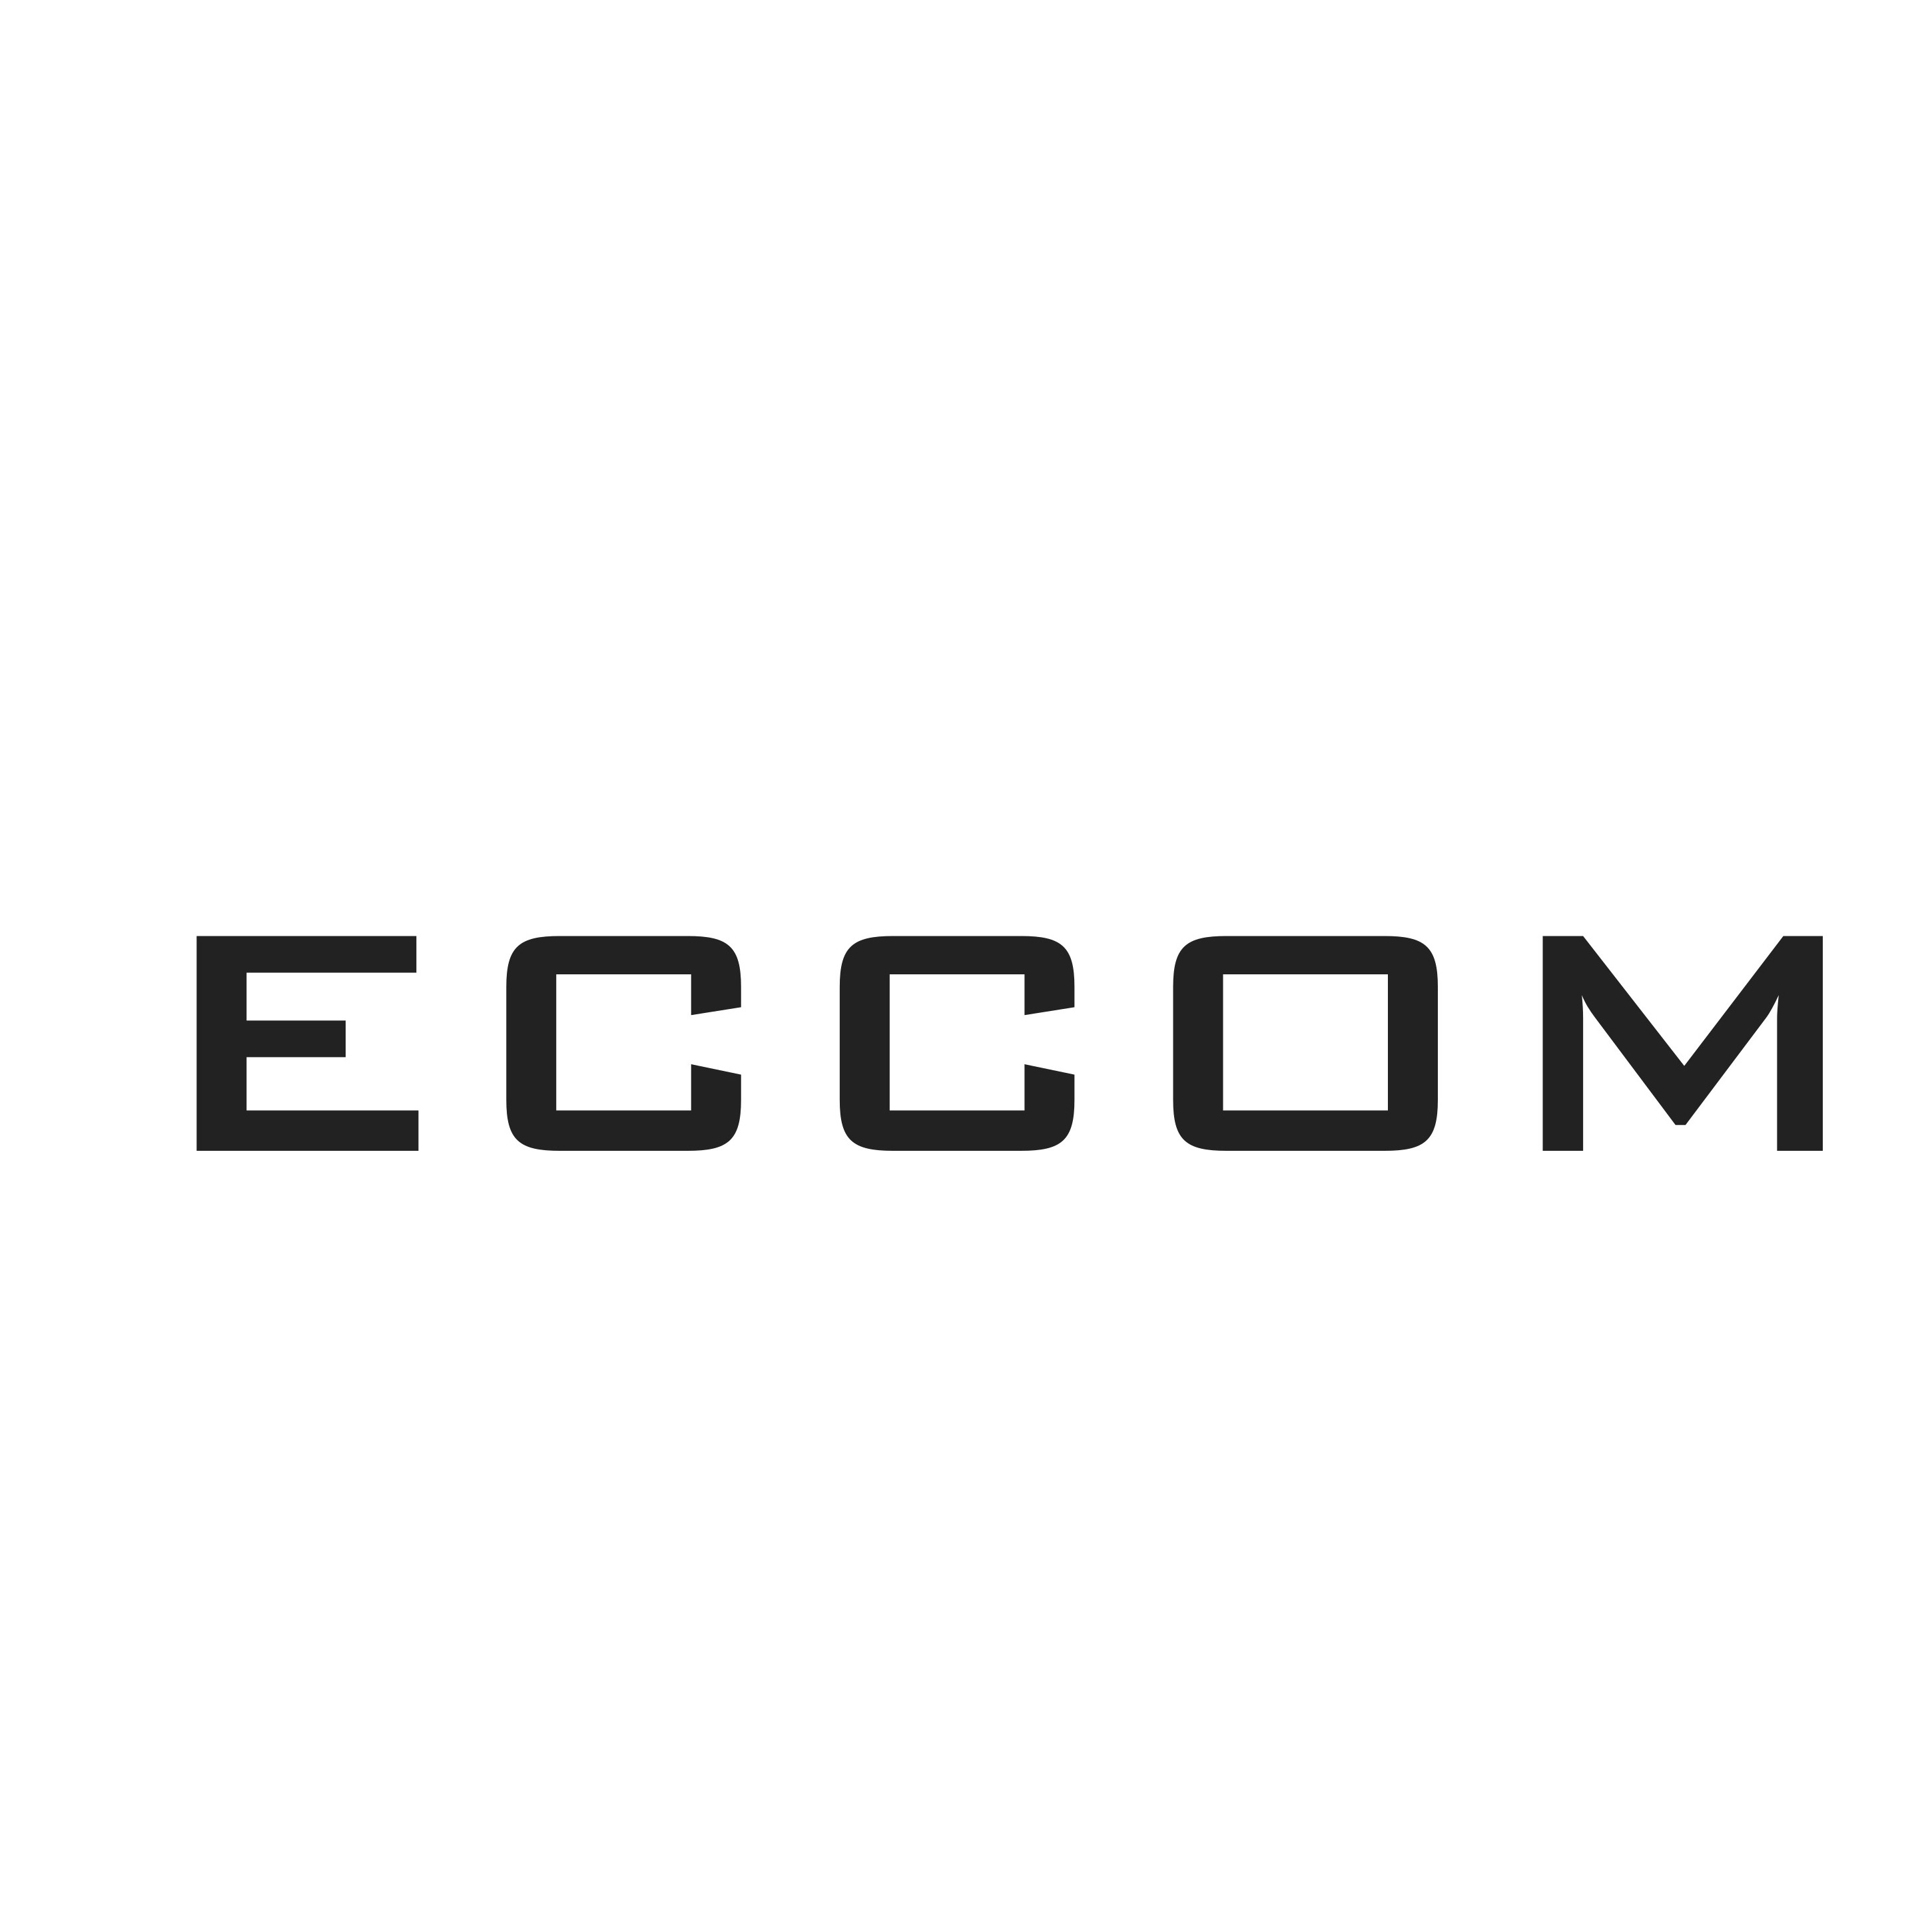 ECCOM OÜ logo